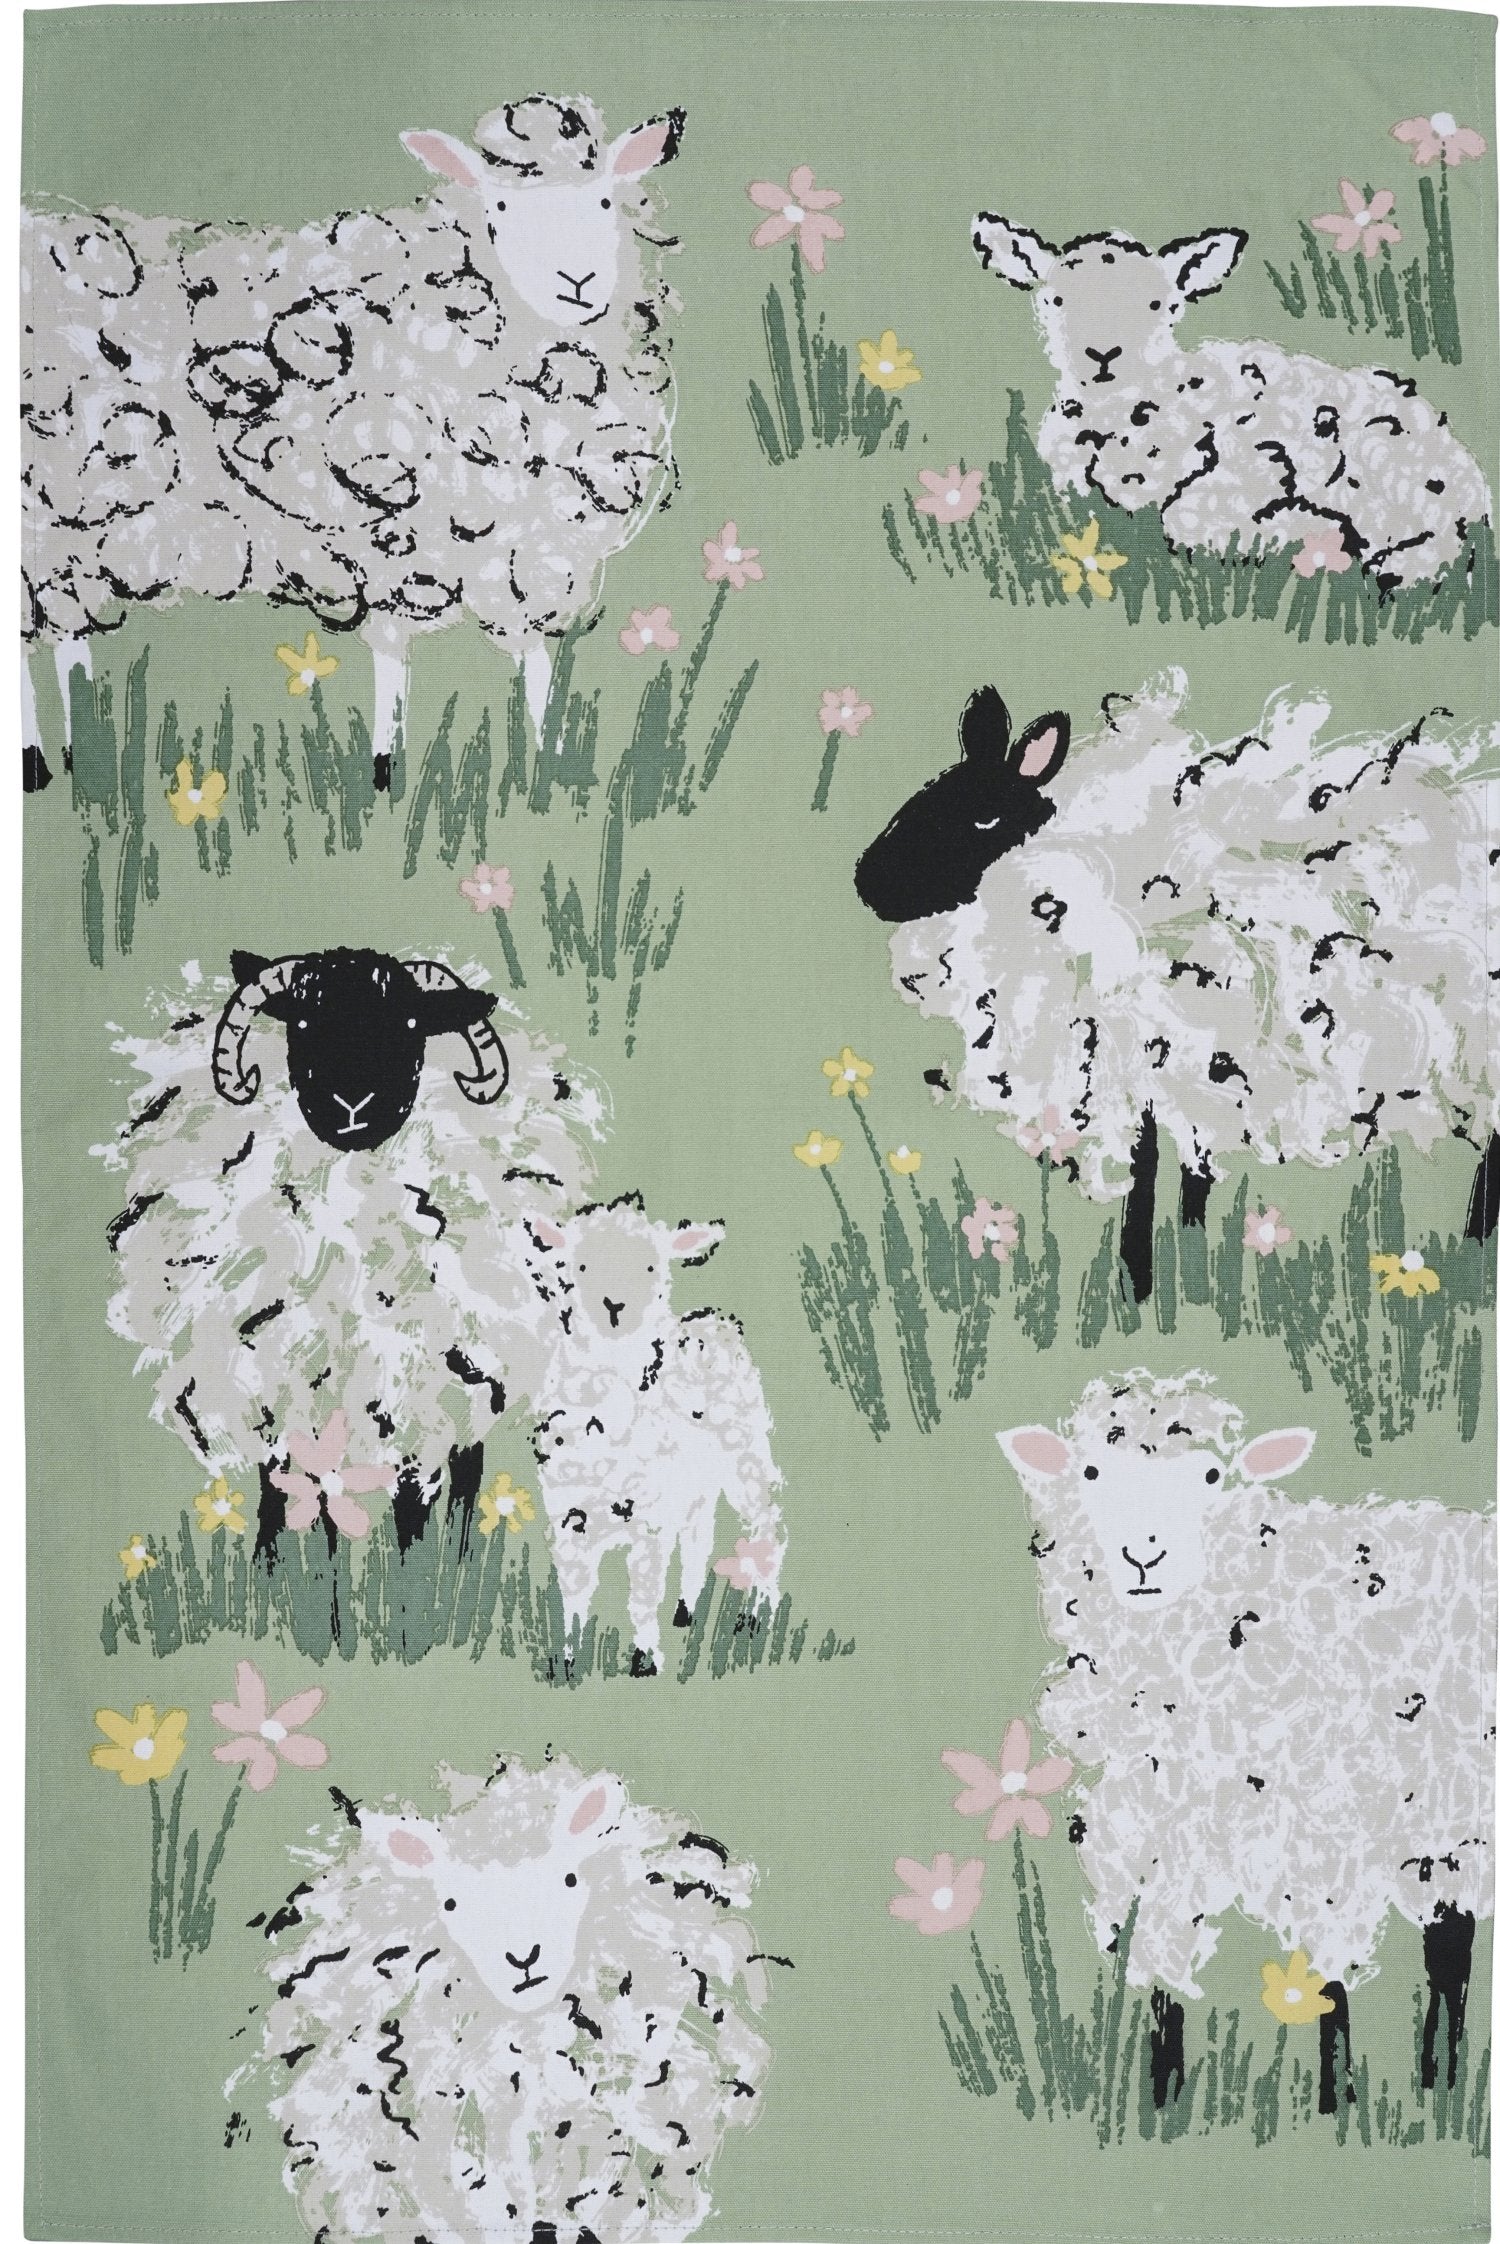 Ulster Weavers, "Woolly Sheep", Printed cotton tea towel.